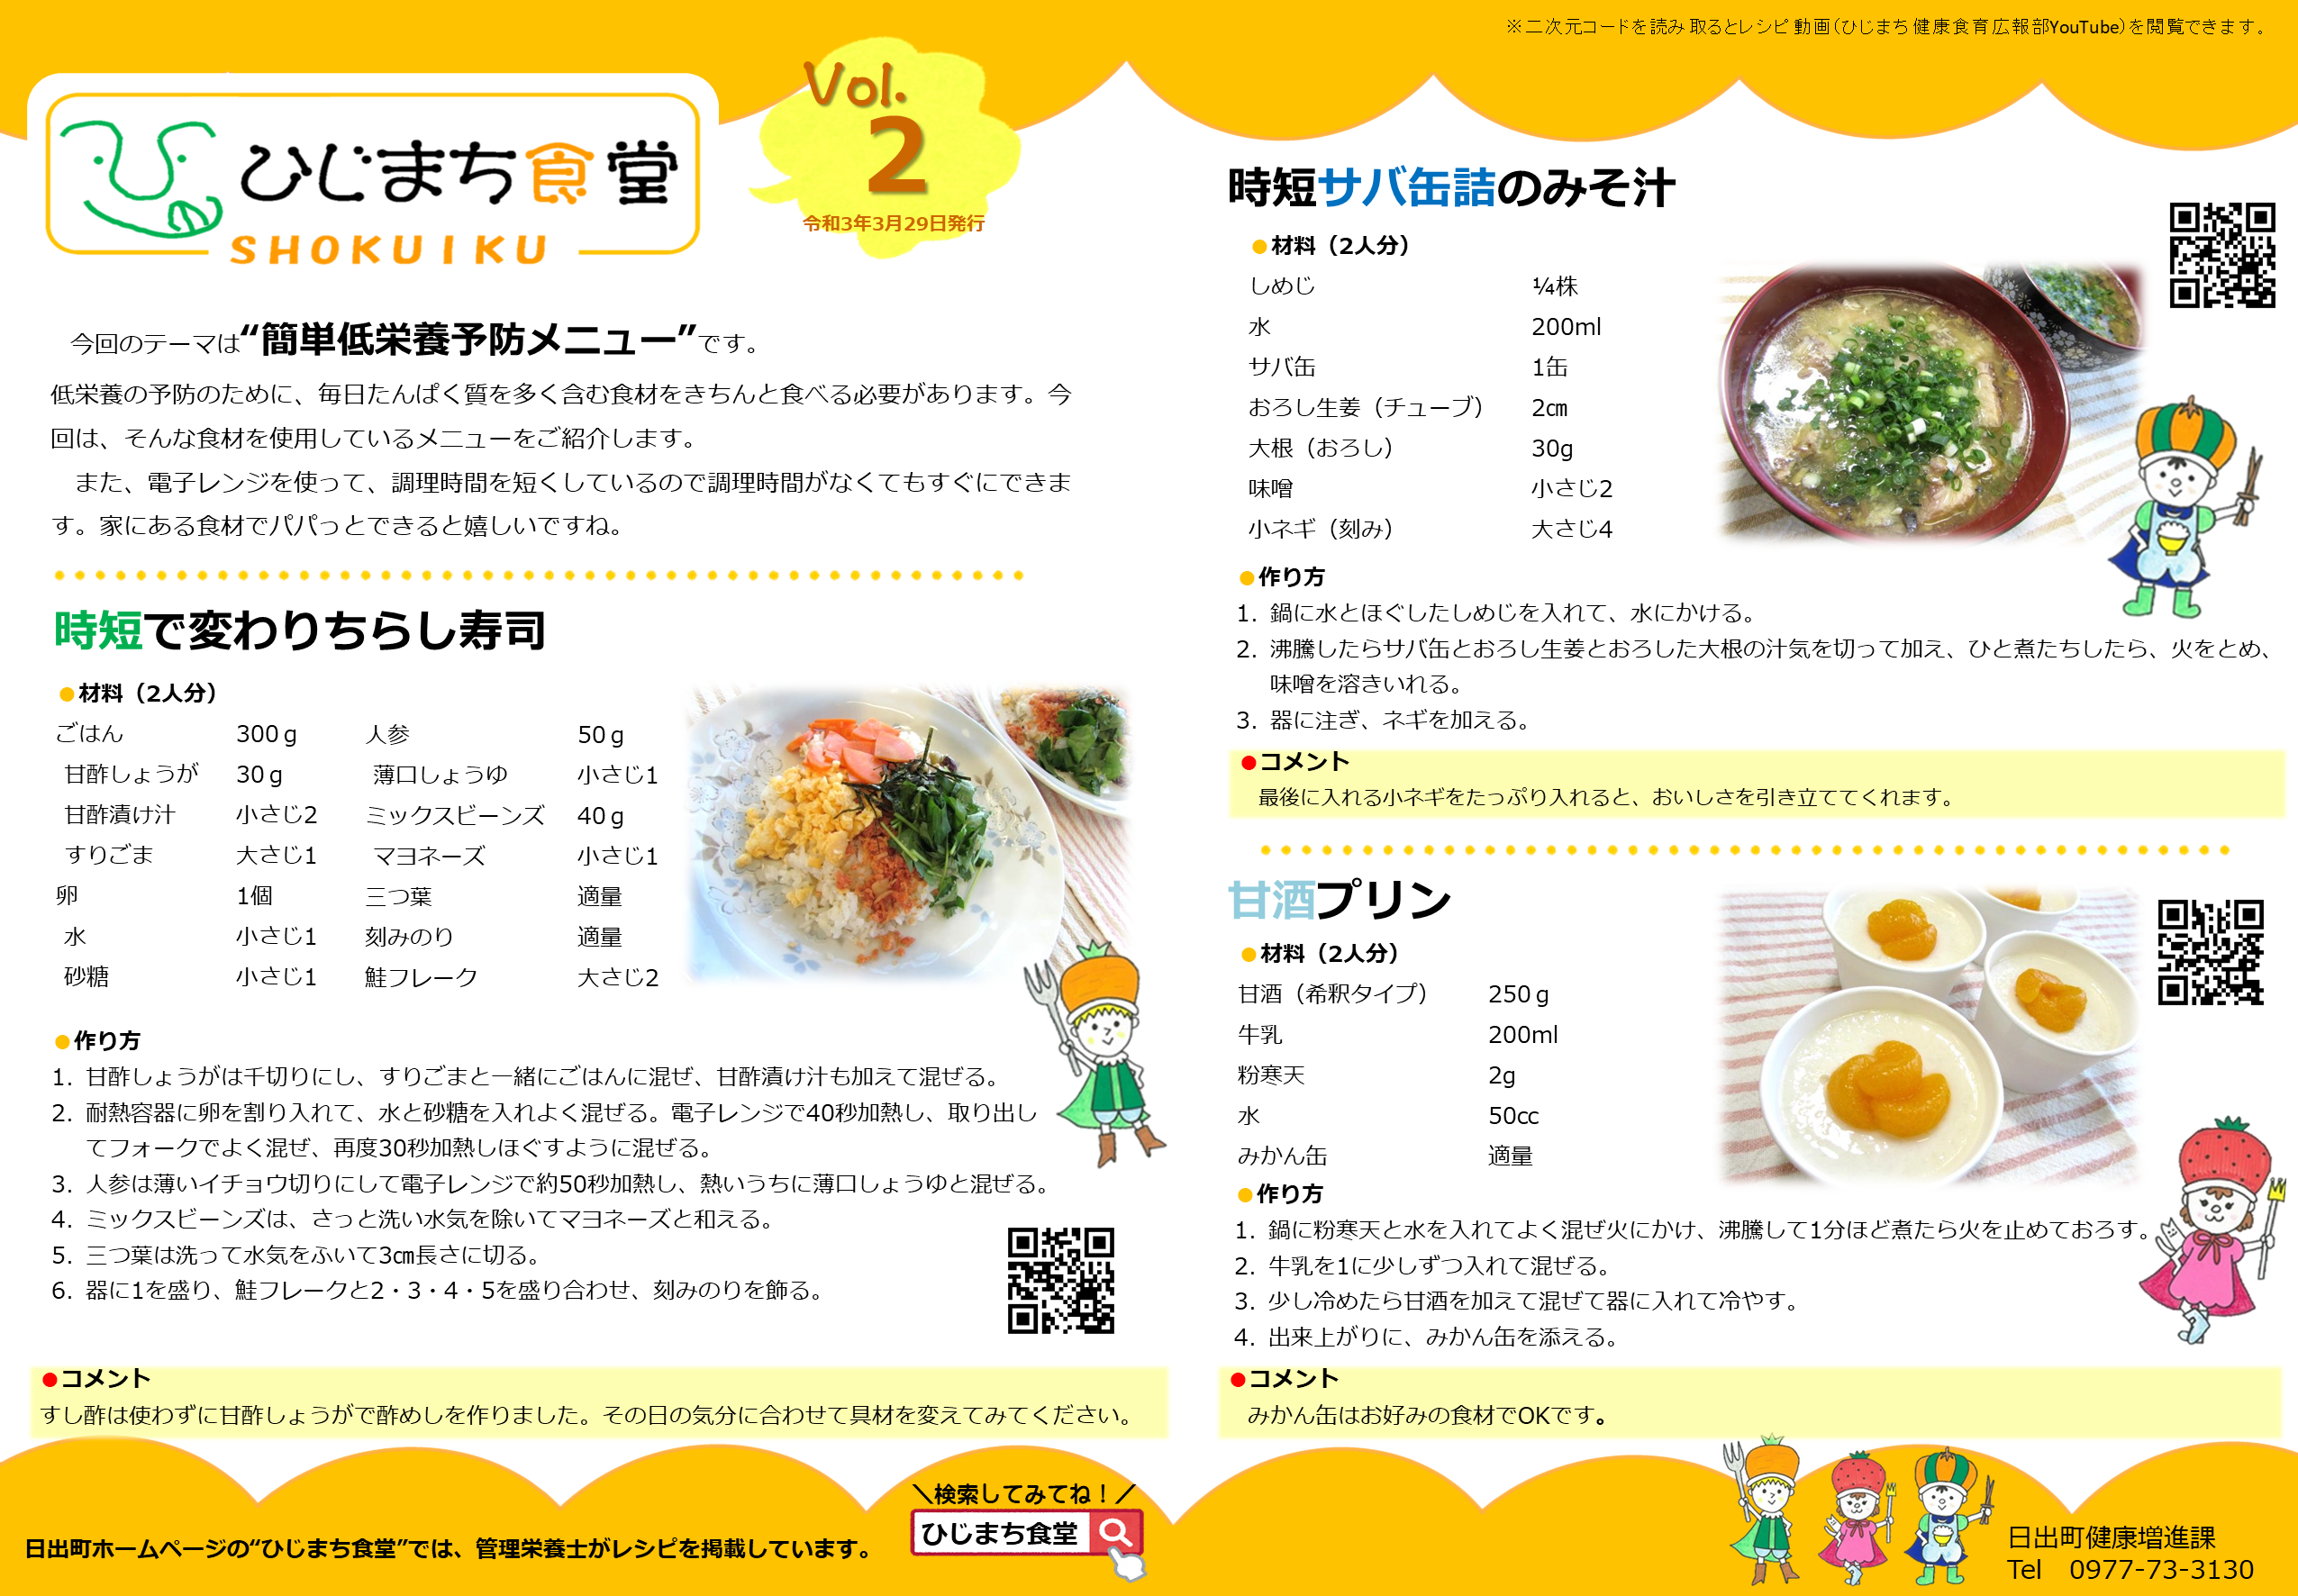 ひじまち食堂Vol.2のレシピ